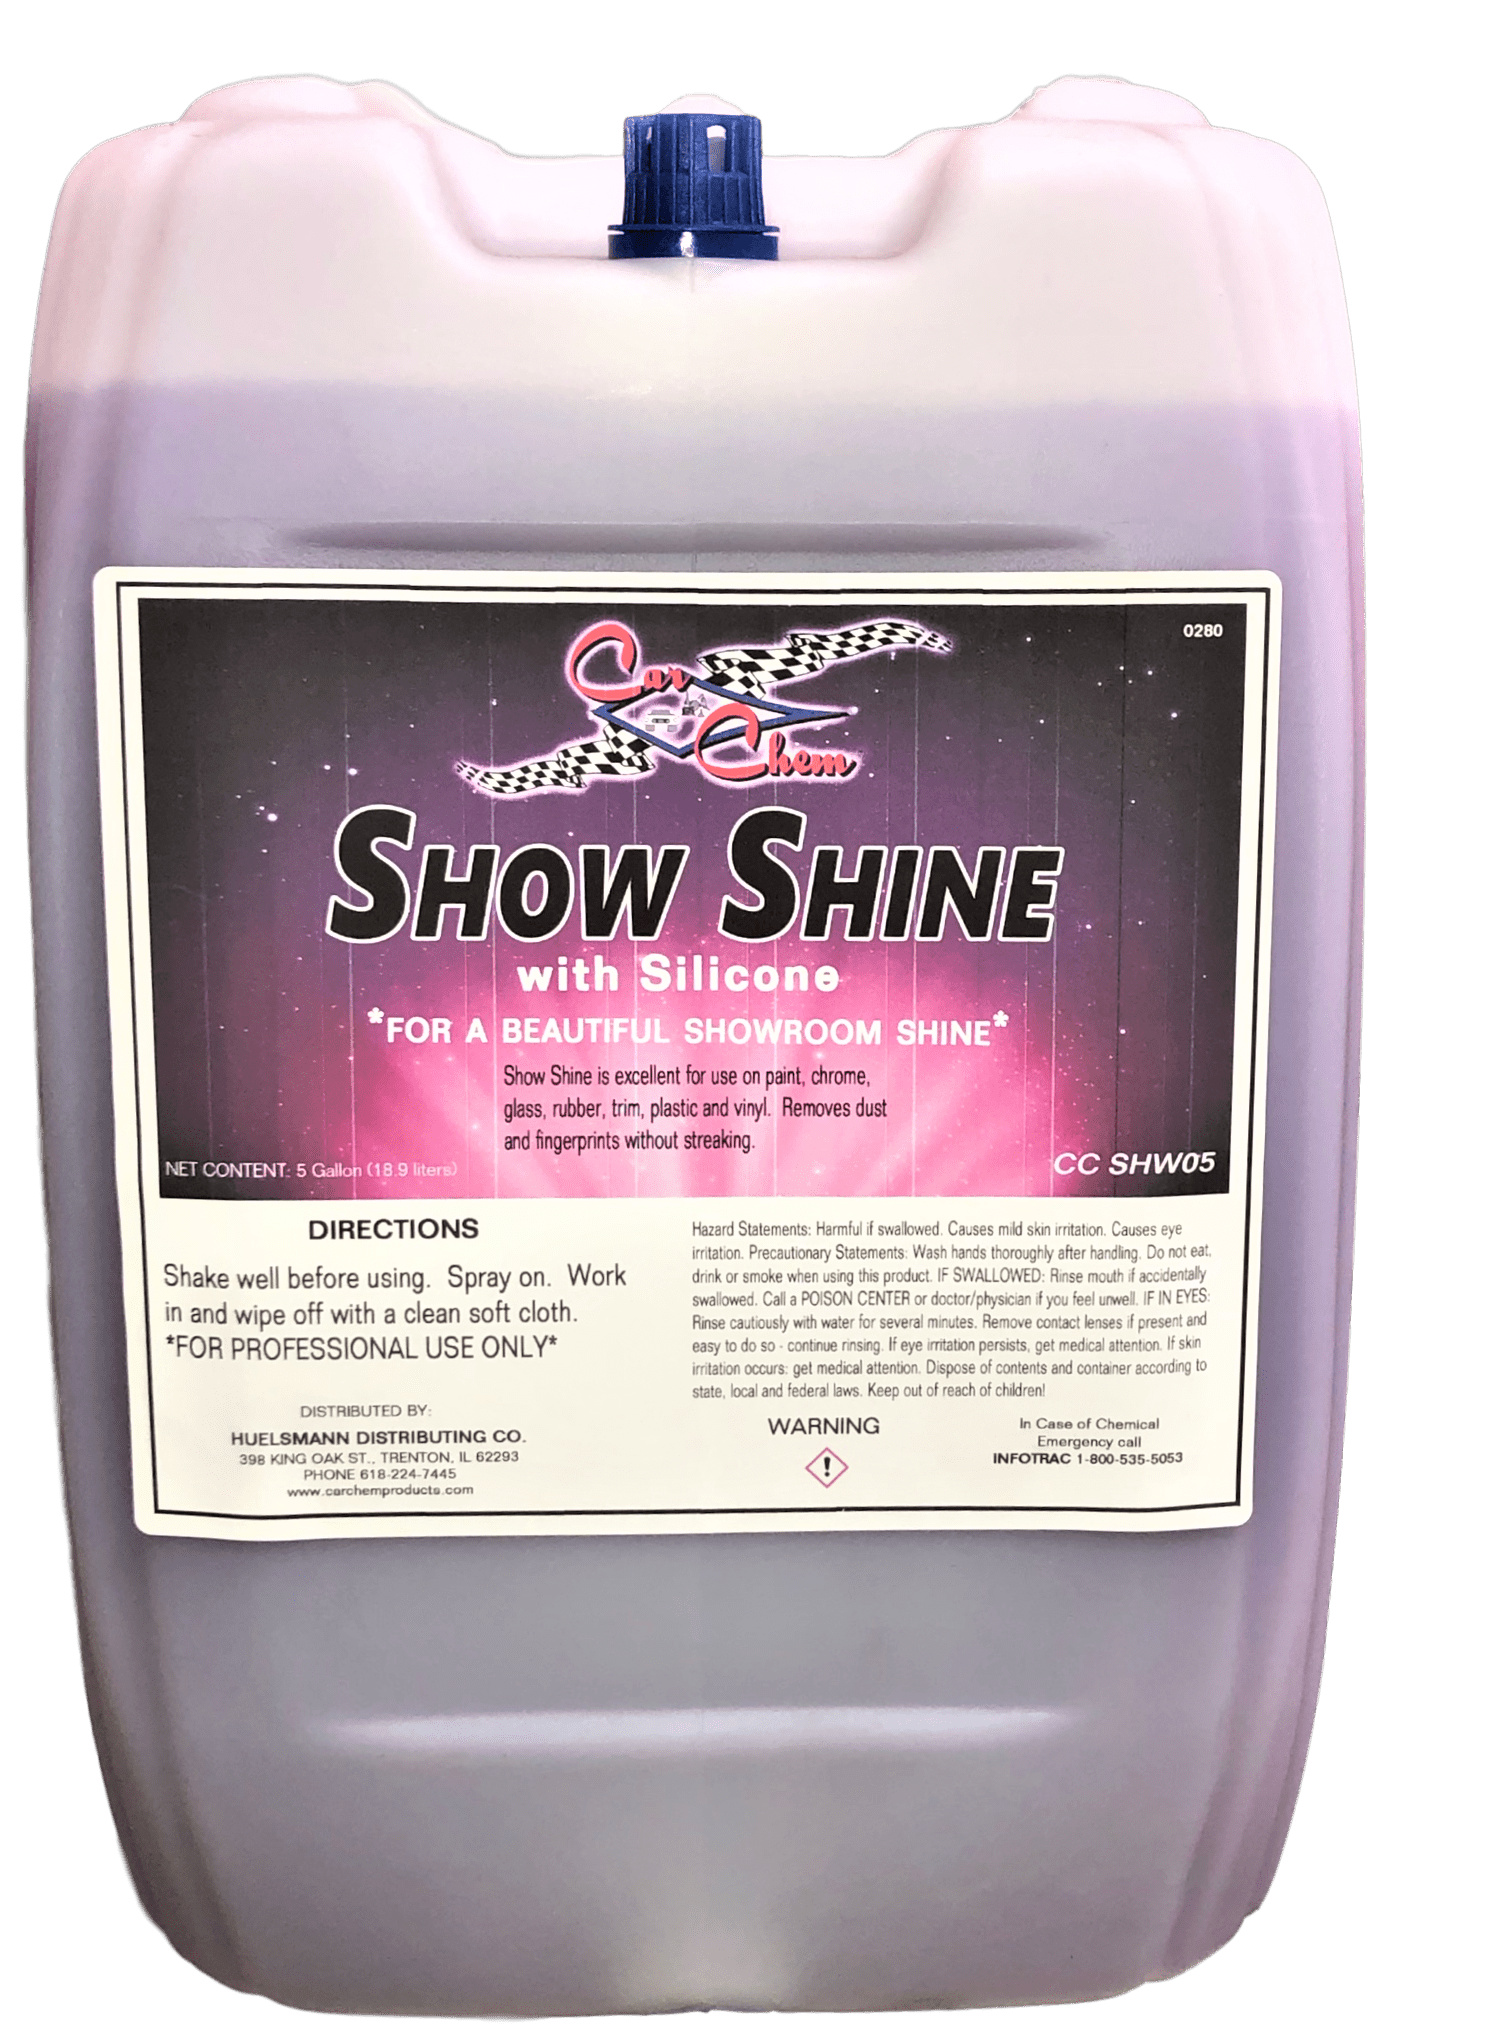 Sprayway Low Pro Tire Shine CarChem